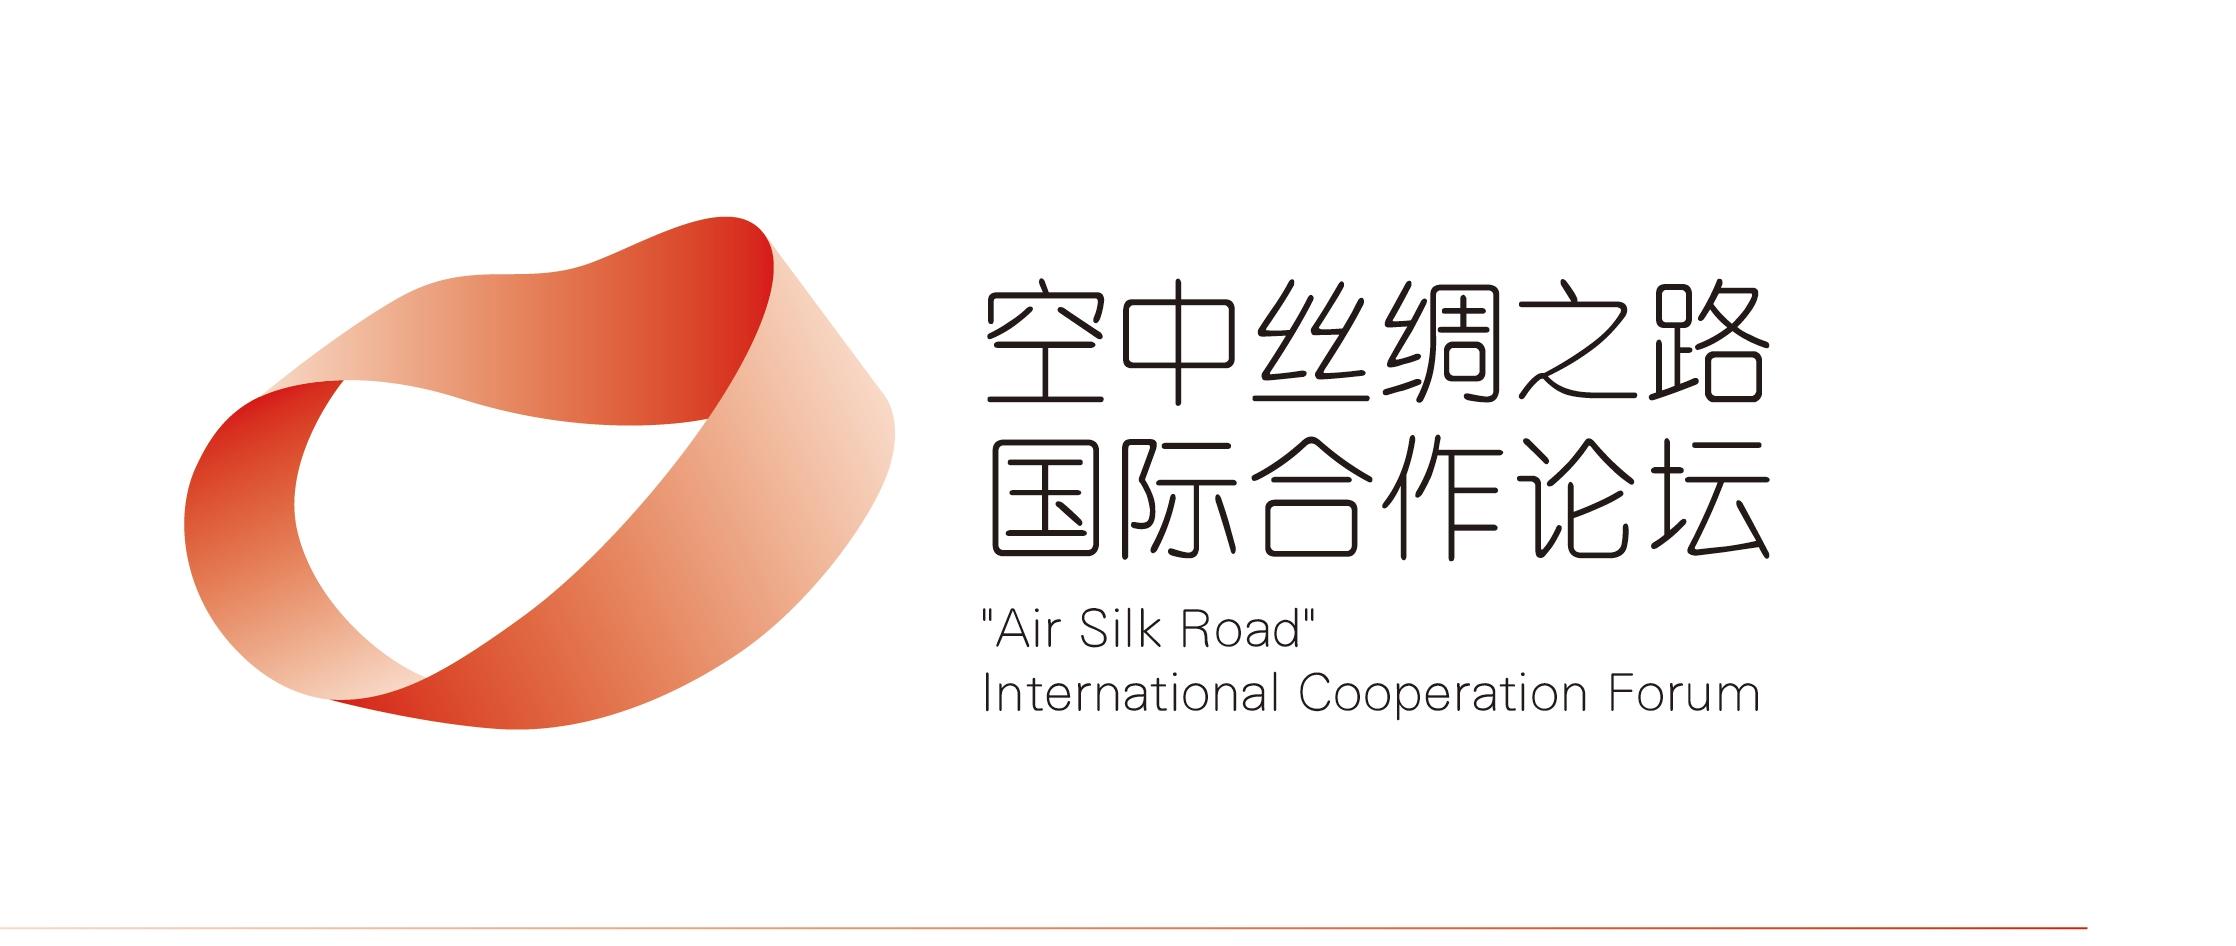 “空中丝绸之路”国际合作论坛主题标识（LOGO）  征集活动作品公示